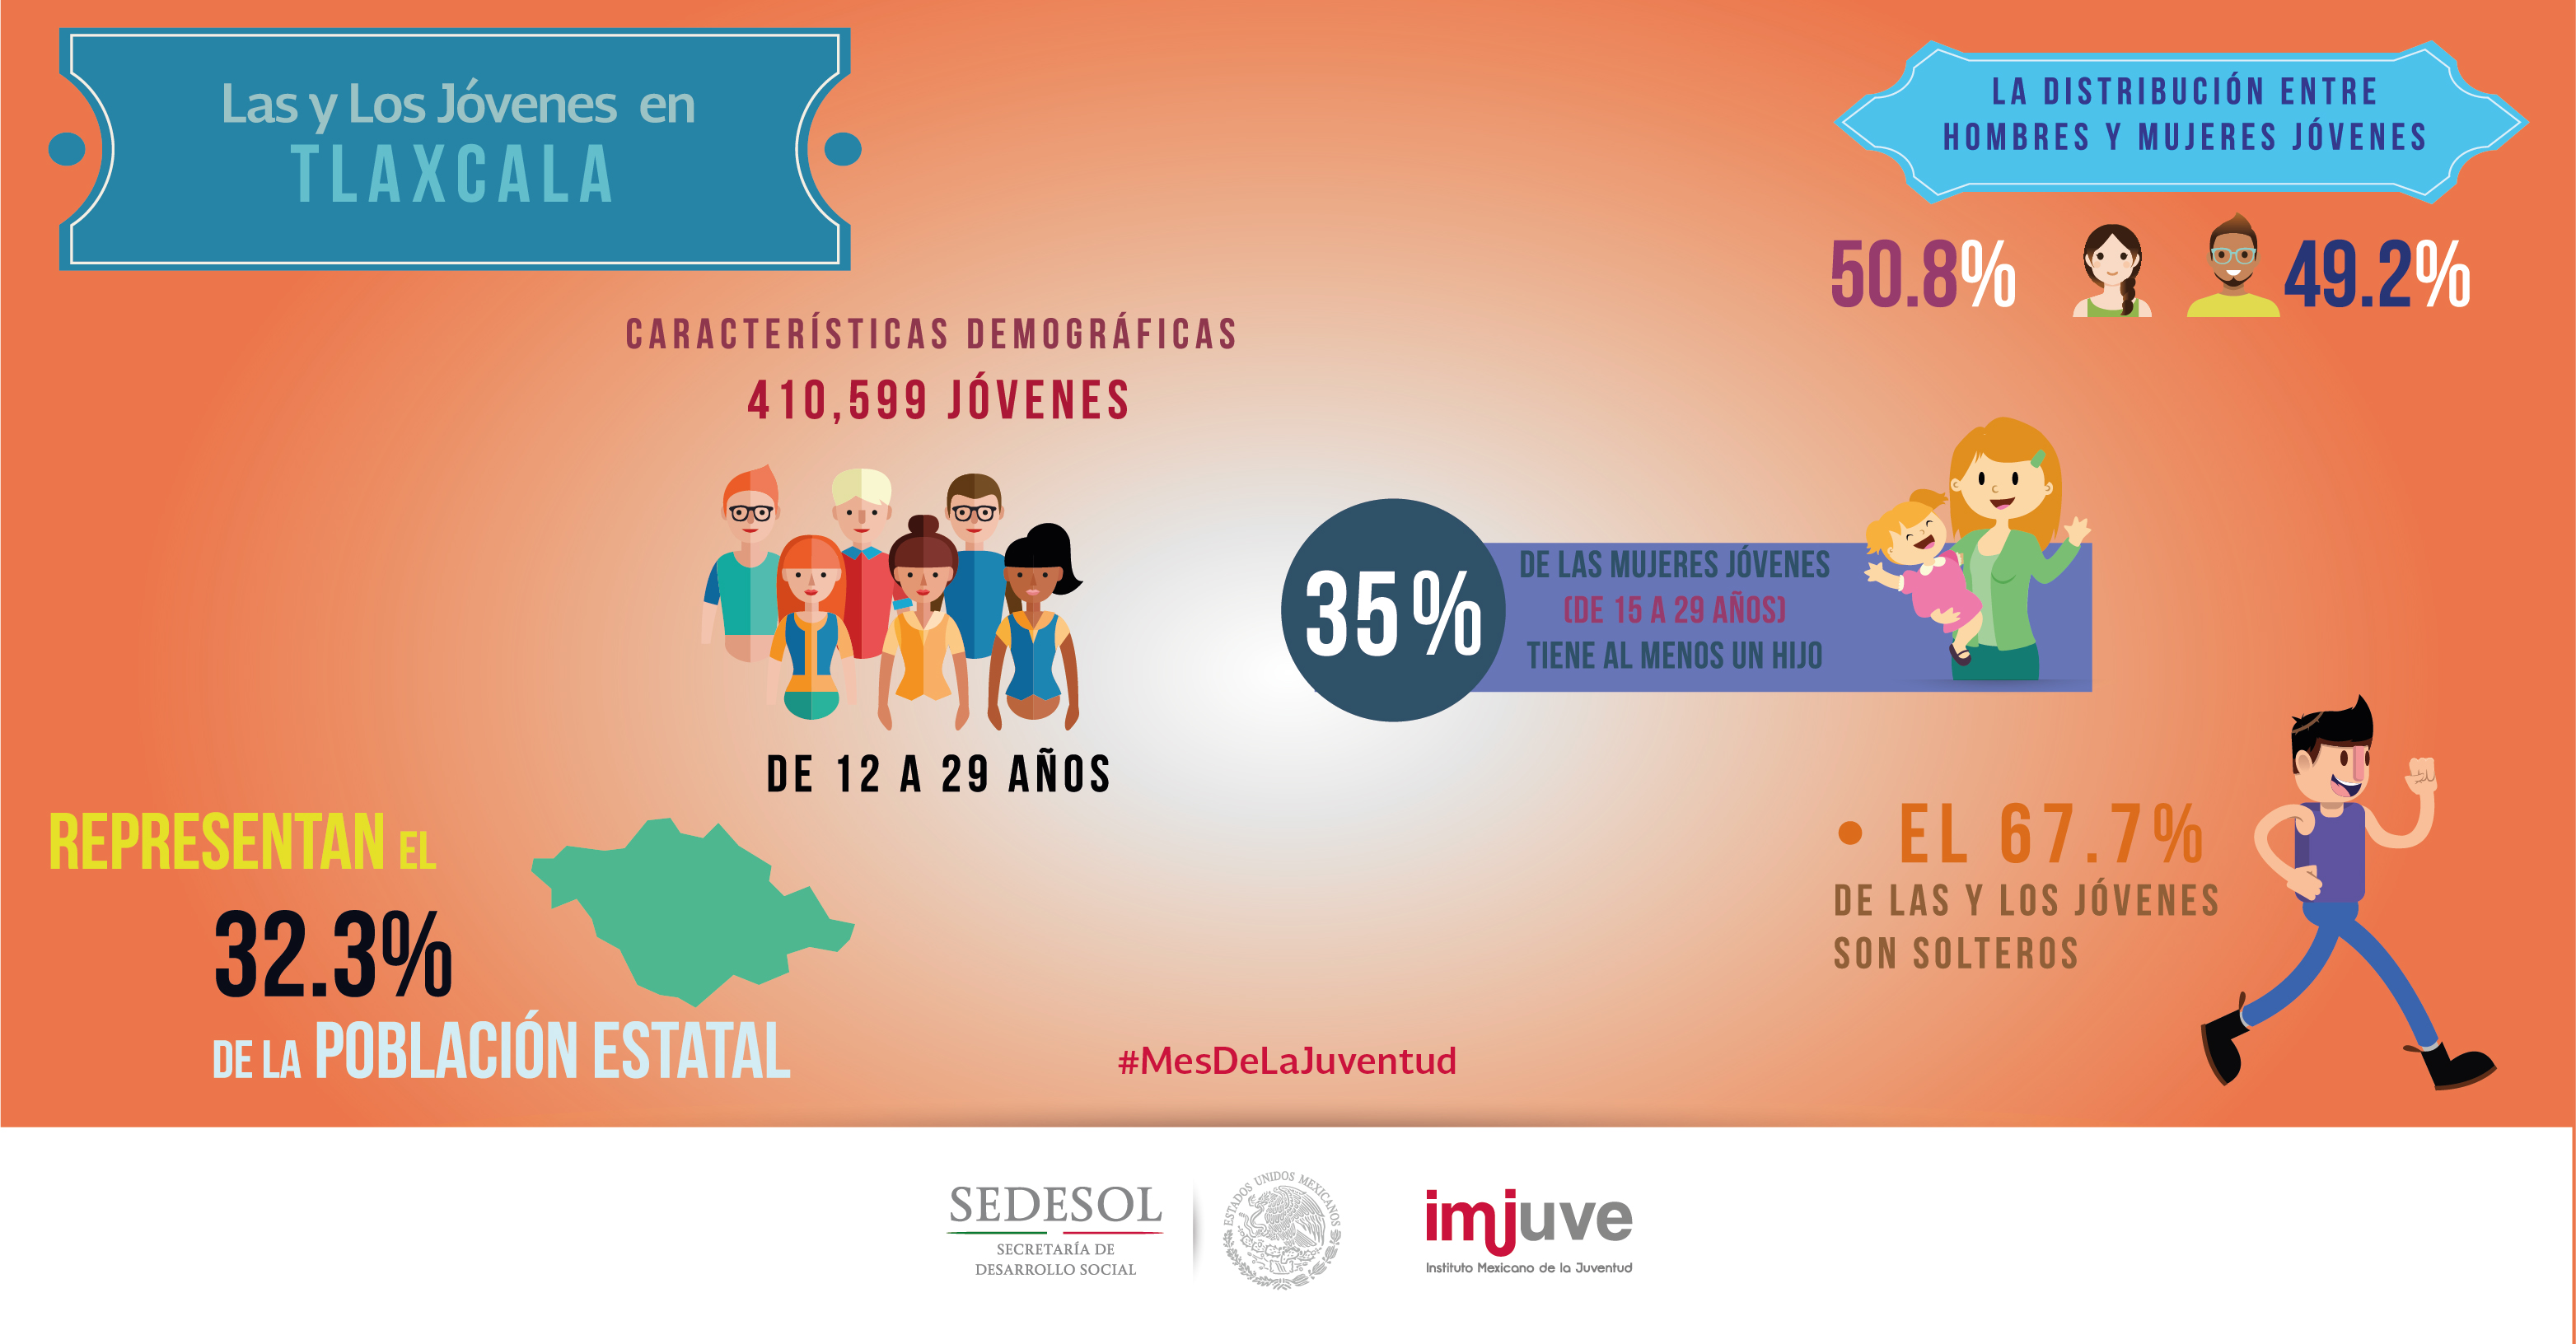 #SabíasQue en Tlaxcala el 67.7% de los jóvenes son solteros.